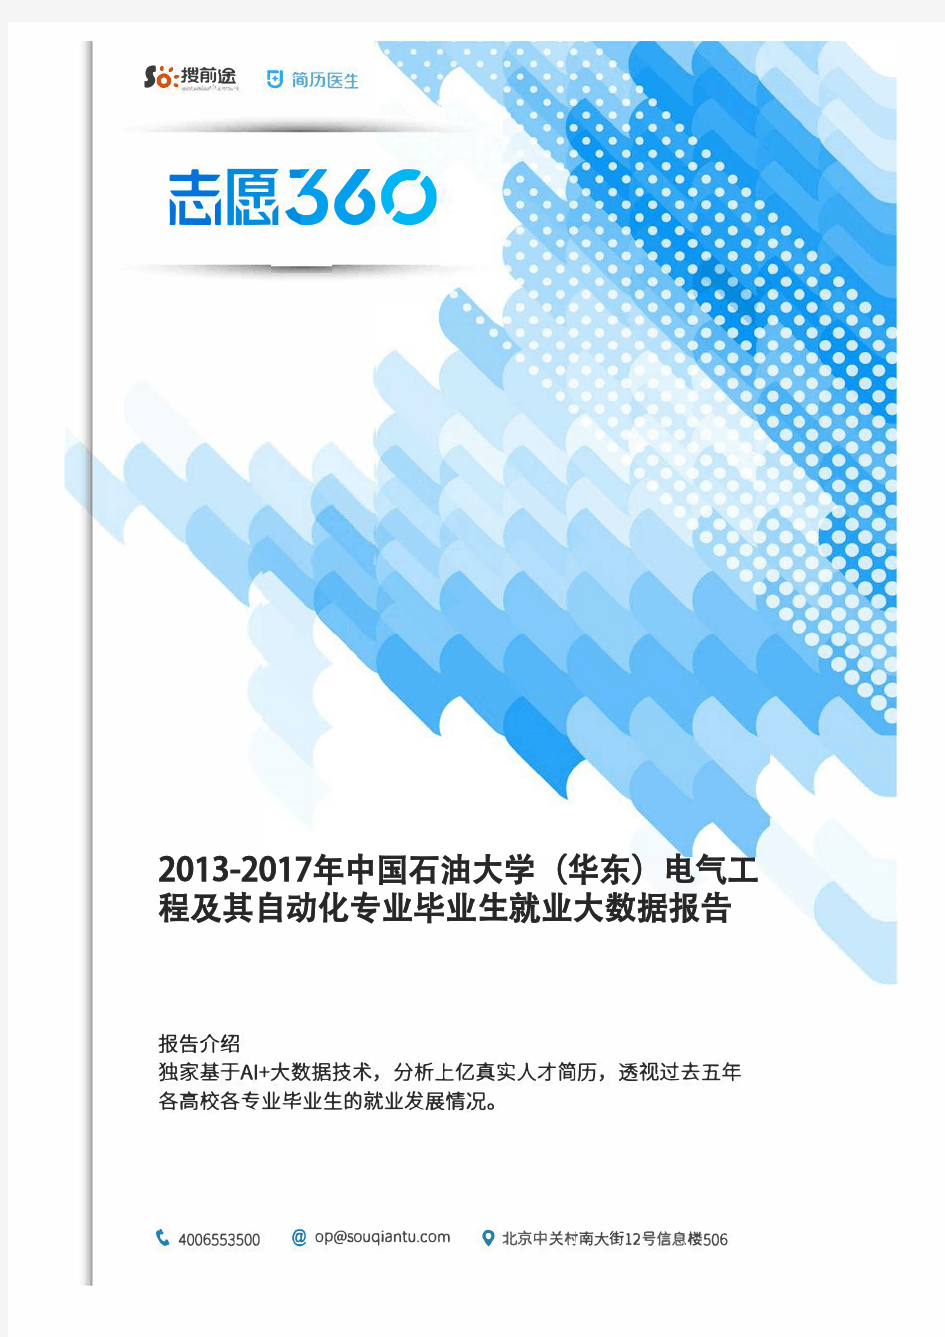 2013-2017年中国石油大学(华东)电气工程及其自动化专业毕业生就业大数据报告